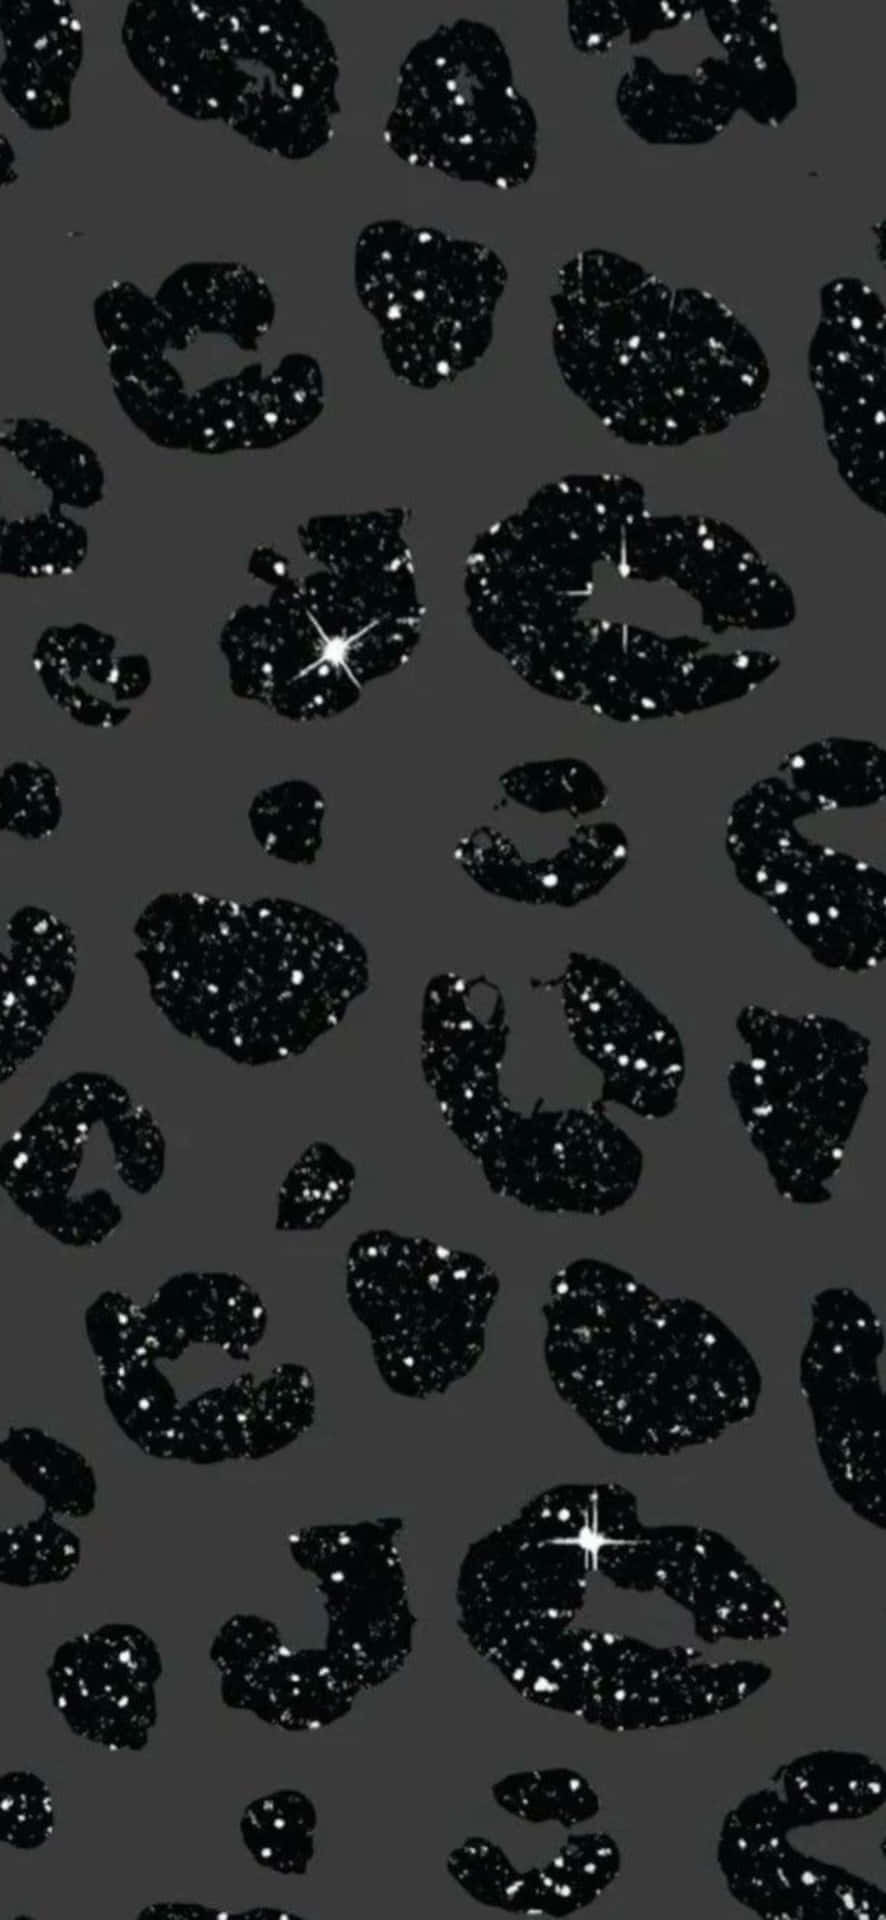 Abstract Black Leopard Spots Pattern Wallpaper